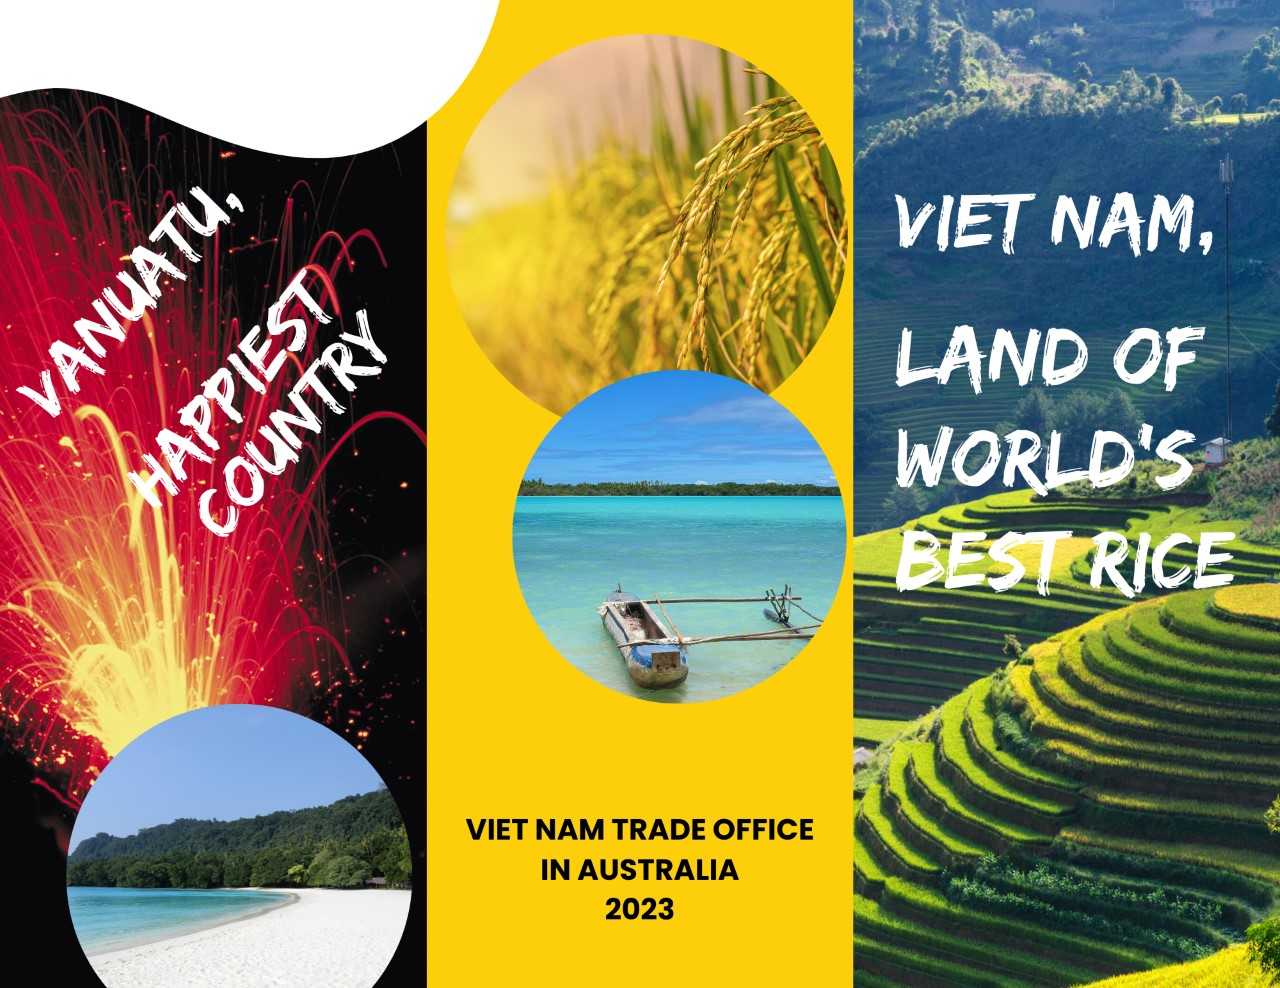 Poster quảng cáo “Viet Nam, vùng đất của gạo ngon nhất thế giới” được Thương vụ triển khai tại địa bàn kiêm nhiệm Vanuatu